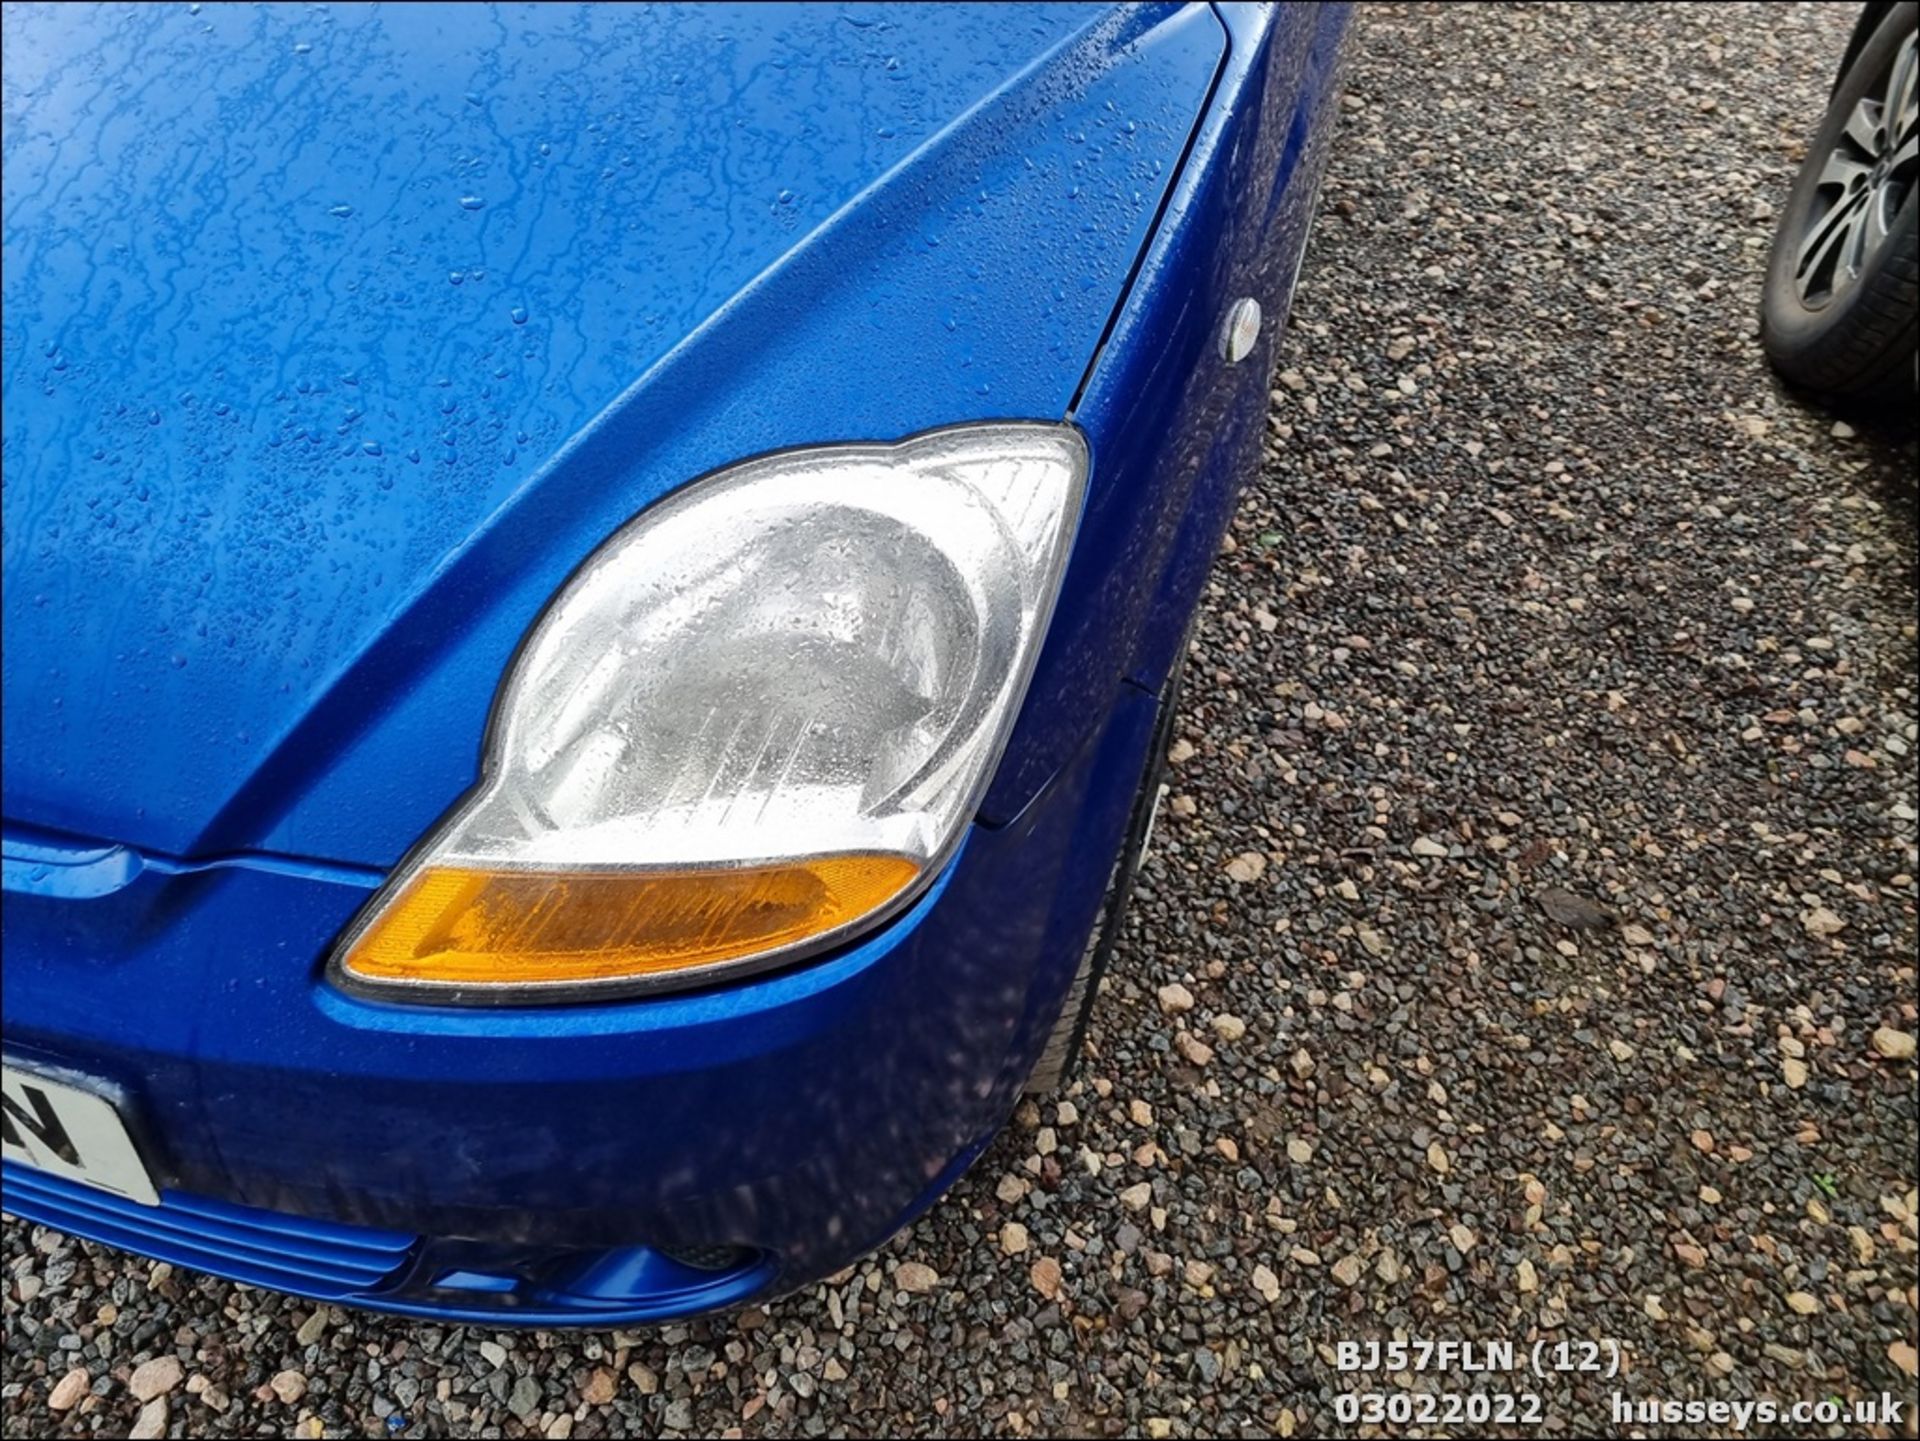 07/57 CHEVROLET MATIZ SE - 995cc 5dr Hatchback (Blue) - Image 12 of 27